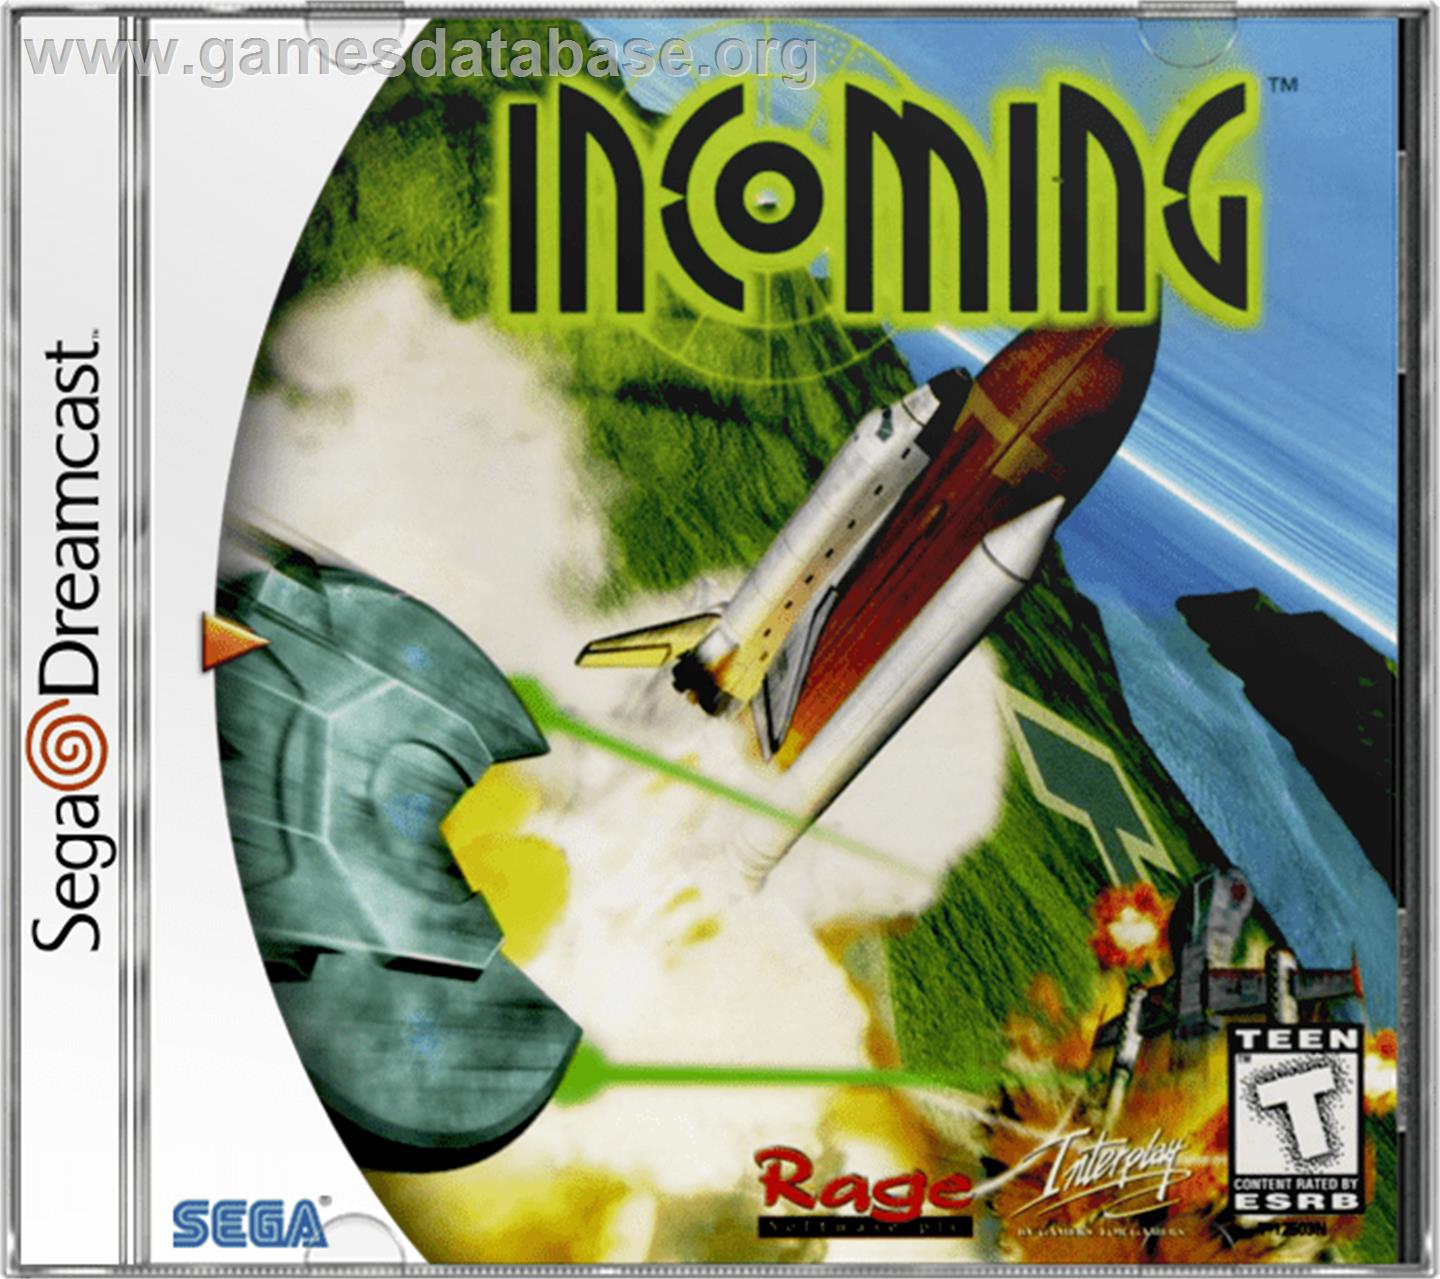 Incoming - Sega Dreamcast - Artwork - Box